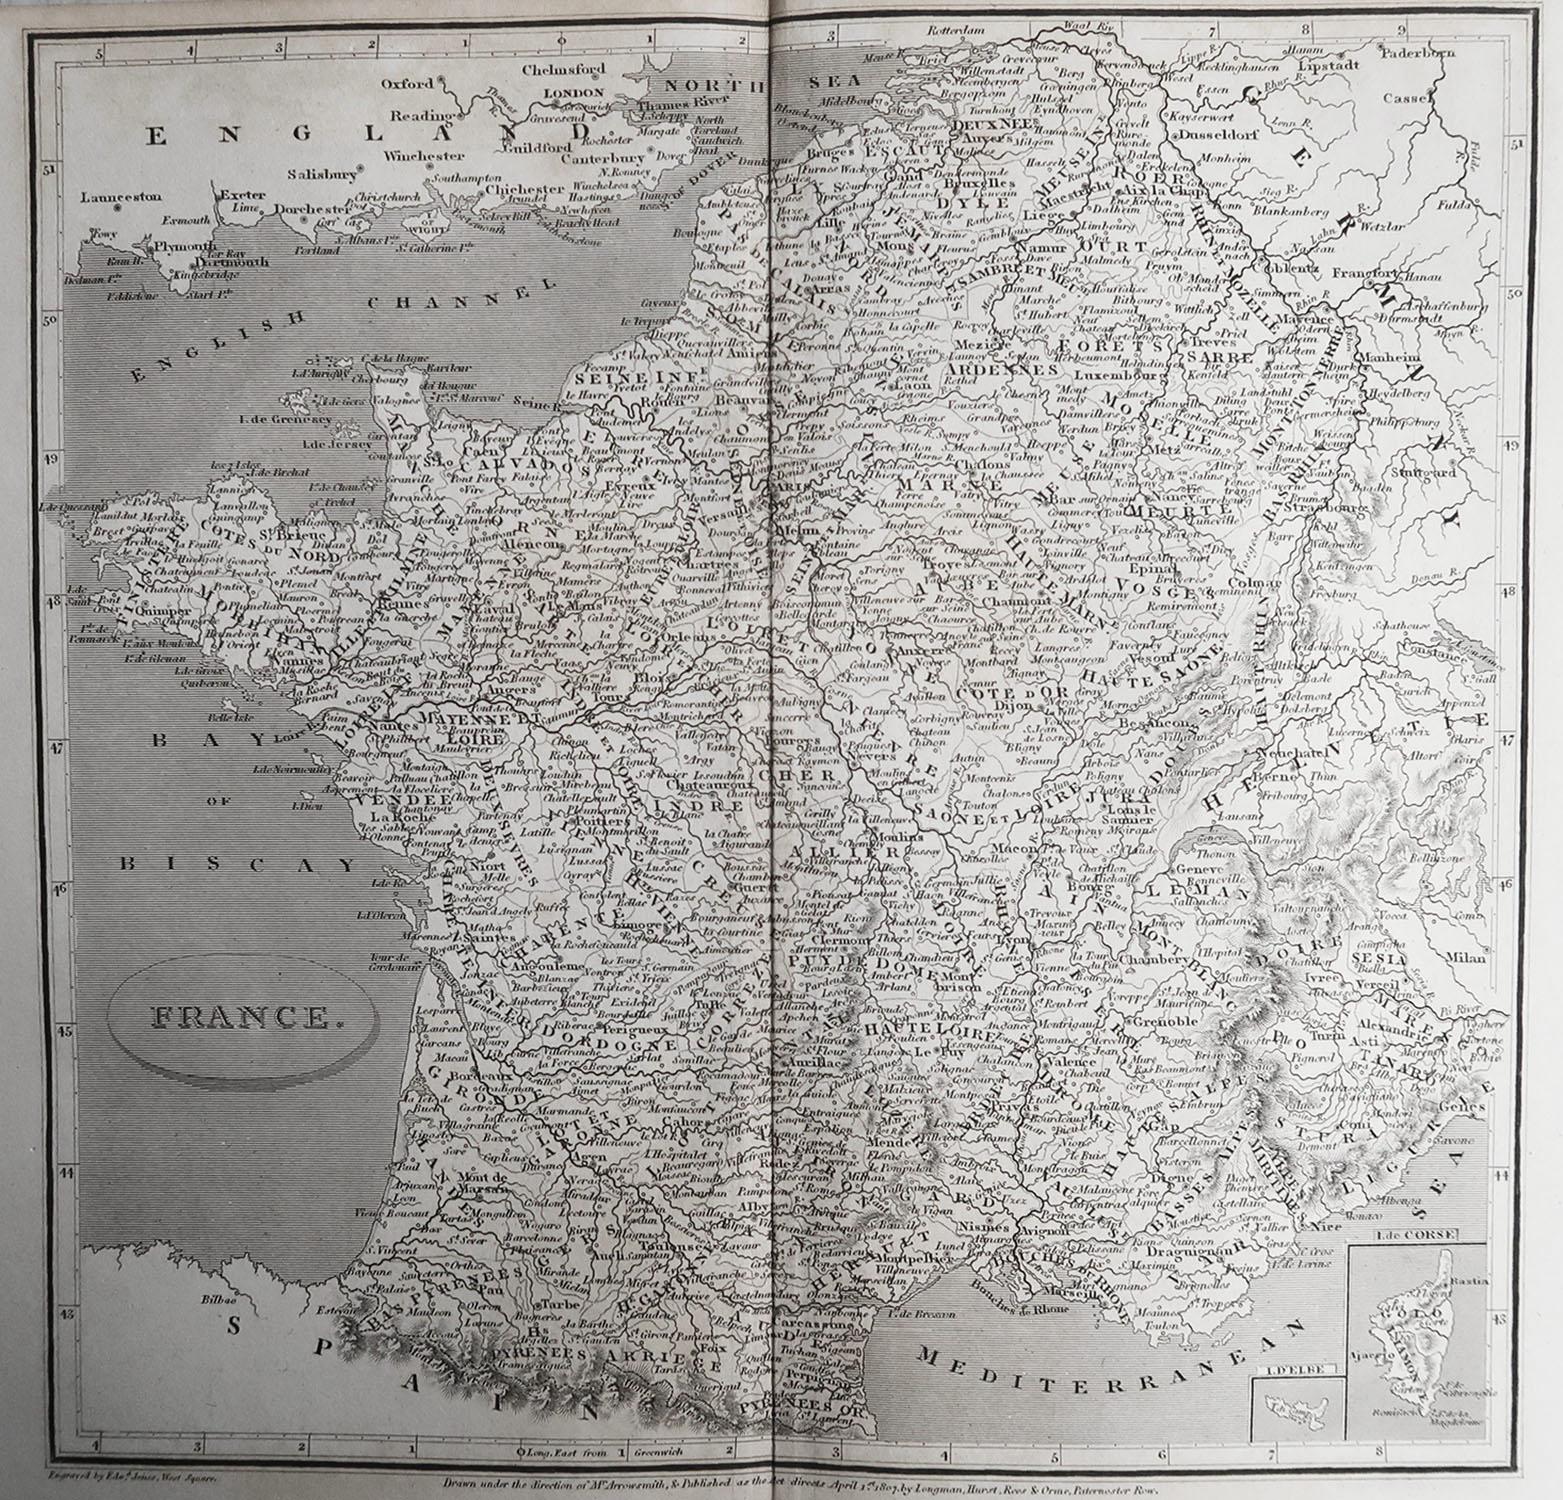 Grande carte de France

Dessiné sous la direction de Arrowsmith.

Gravure sur cuivre.

Publié par Longman, Hurst, Rees, Orme and Brown, 1820

Non encadré.